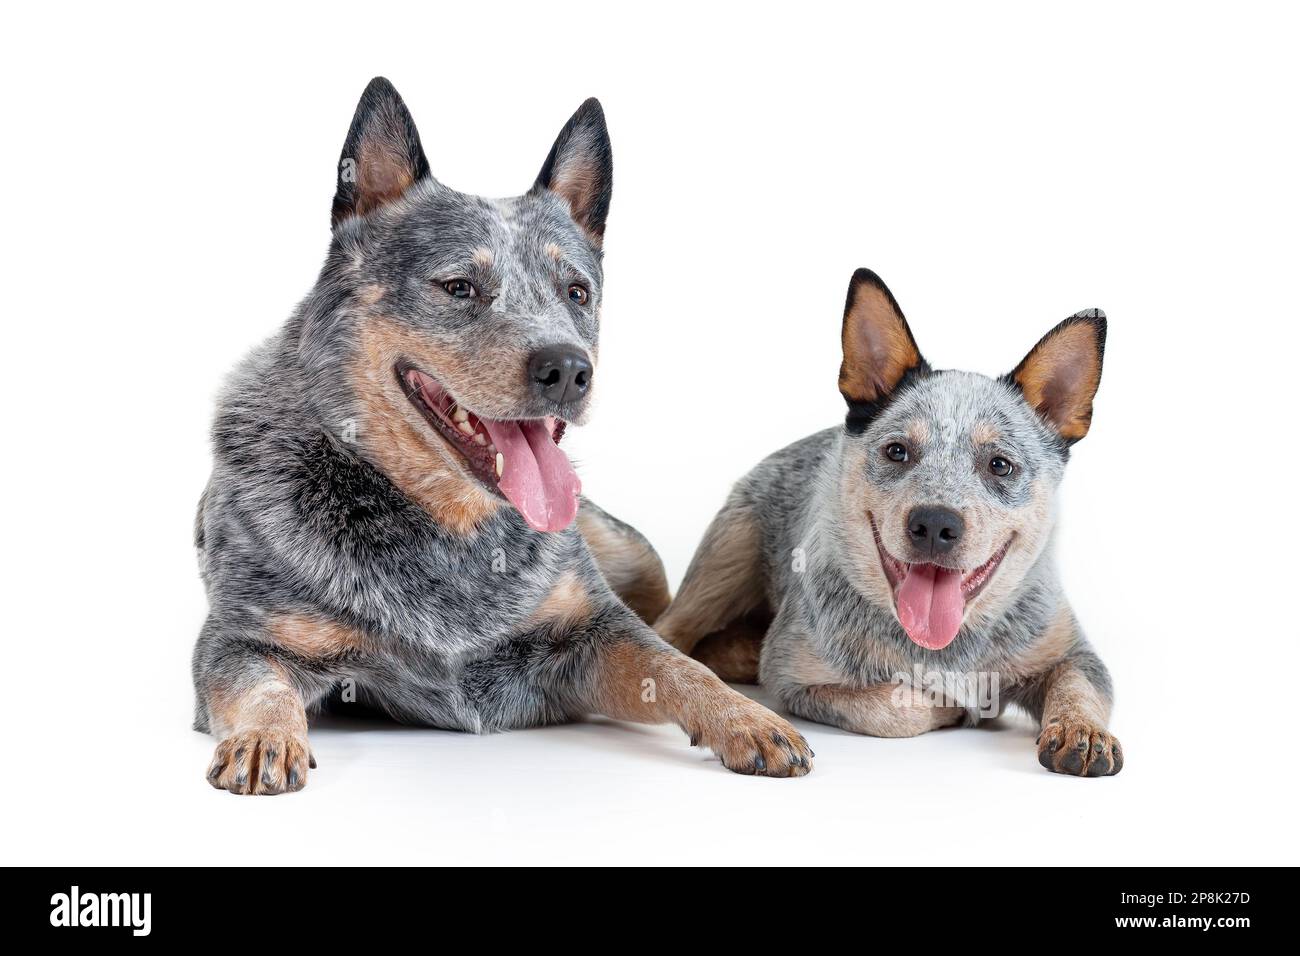 Dos felices perros azules heeler o perros de ganado australianos, adultos y cachorros, acostados aislados sobre fondo blanco. Concepto de cría Foto de stock